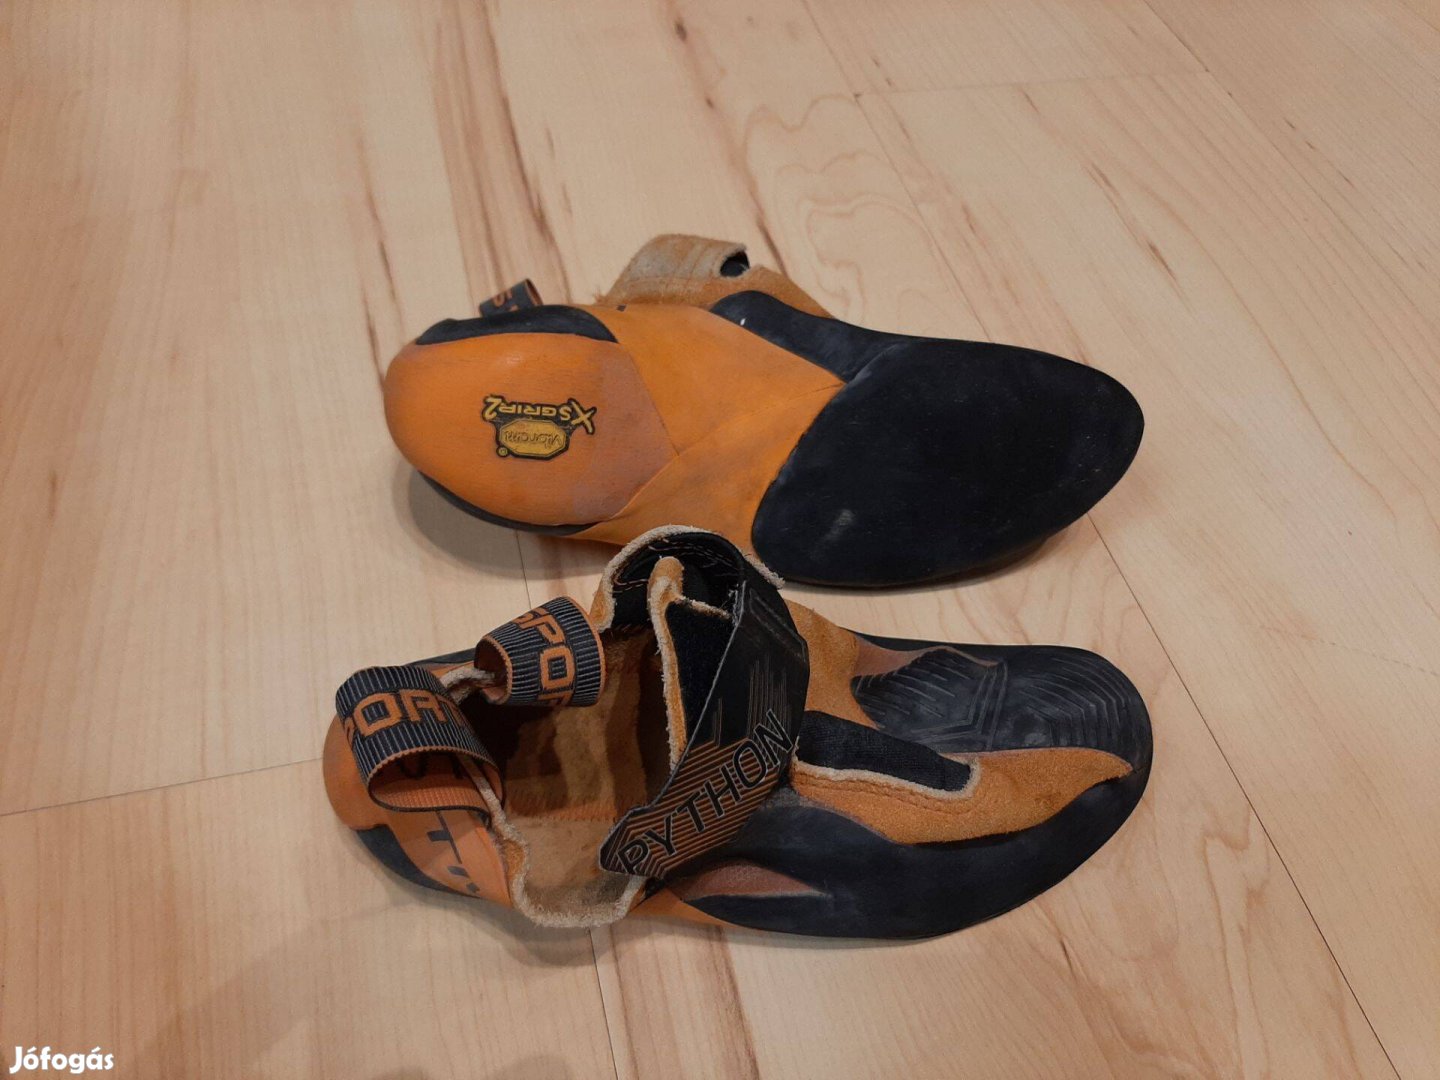 La sportiva Python mászócipő 36.5 falmászó cipő